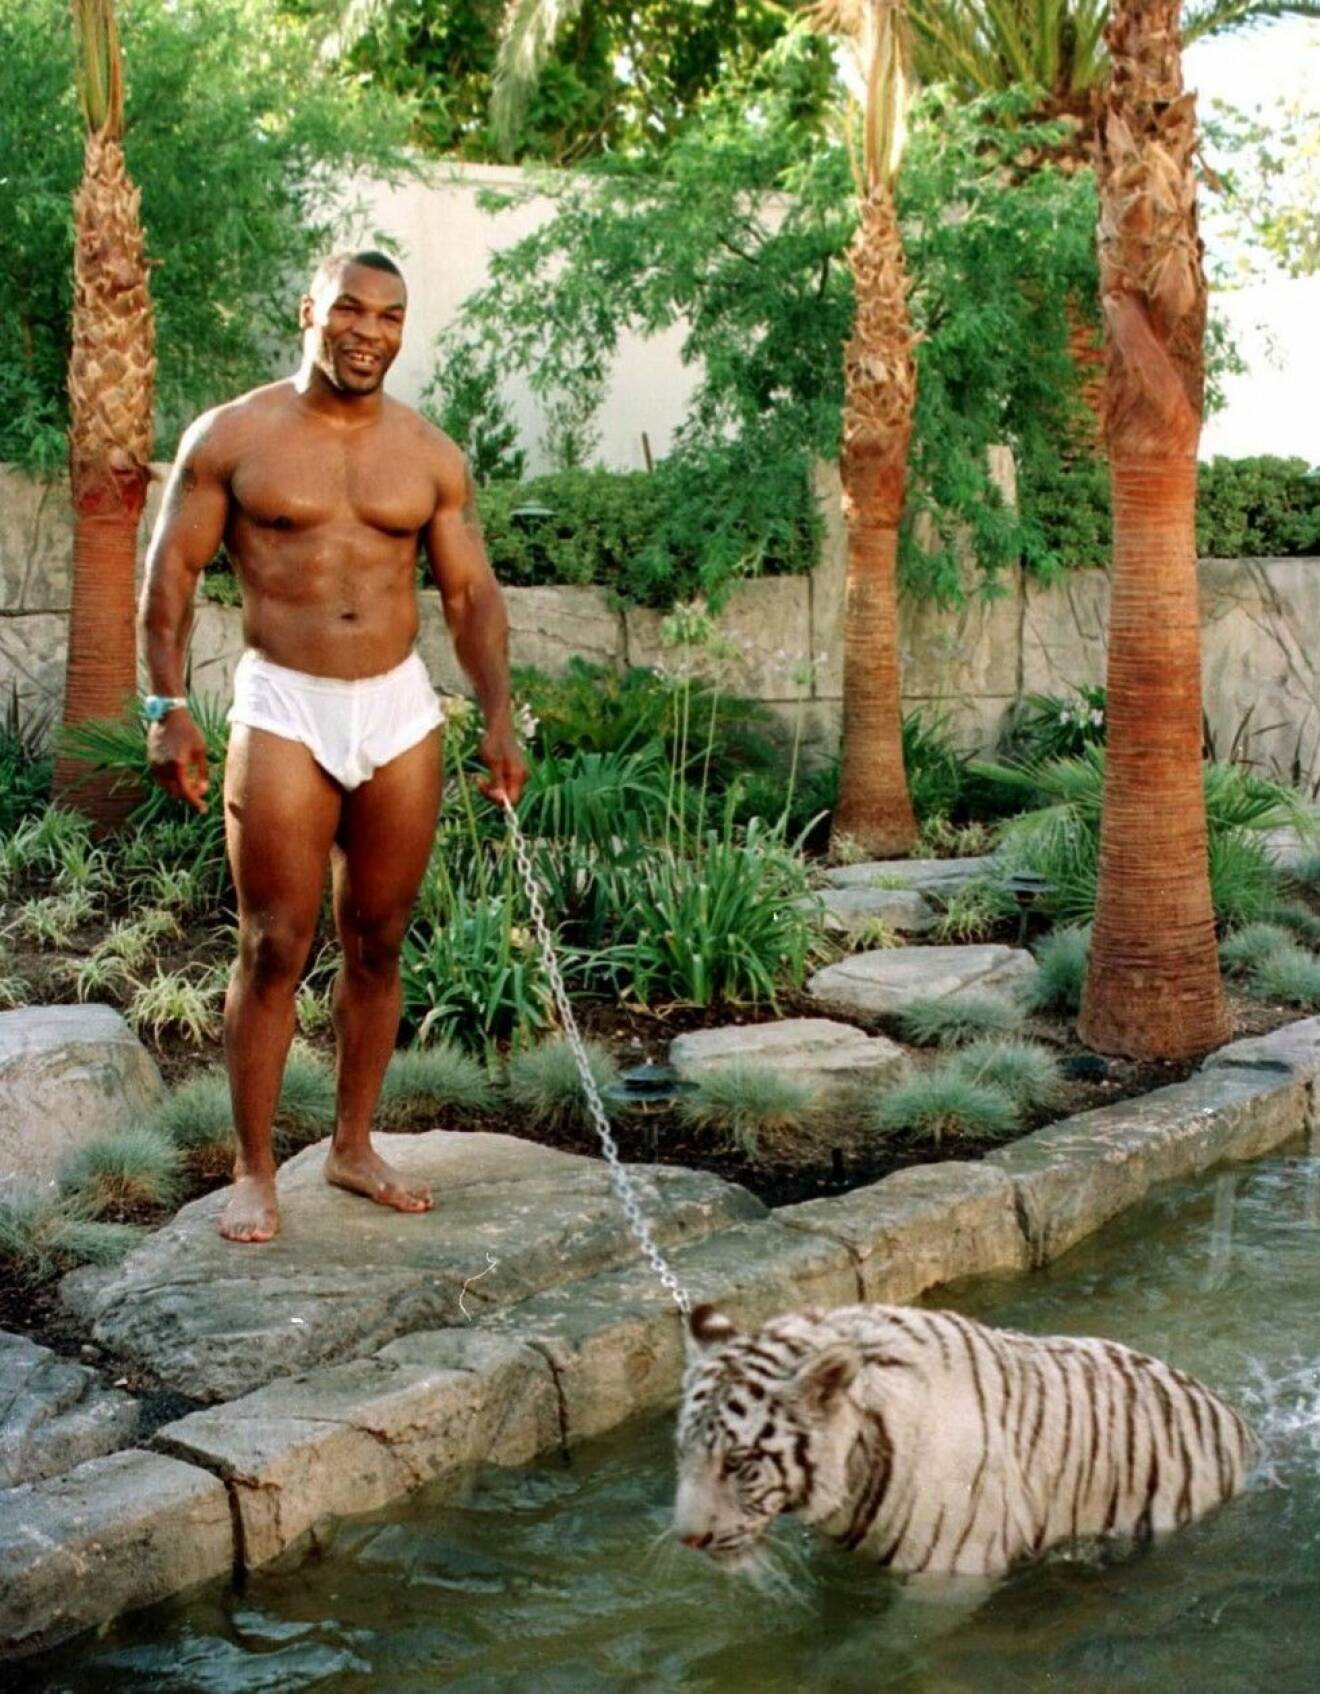 Är man världsmästare i tungviktsboxning bör man väl se till att ha ett respektingivande husdjur? Det tyckte i alla fall Mike Tyson, 48, som på 90-talet skaffade tigern Monday vilken han här poserar bredvid då han låter den ta sig ett dopp hemma på bakgården.